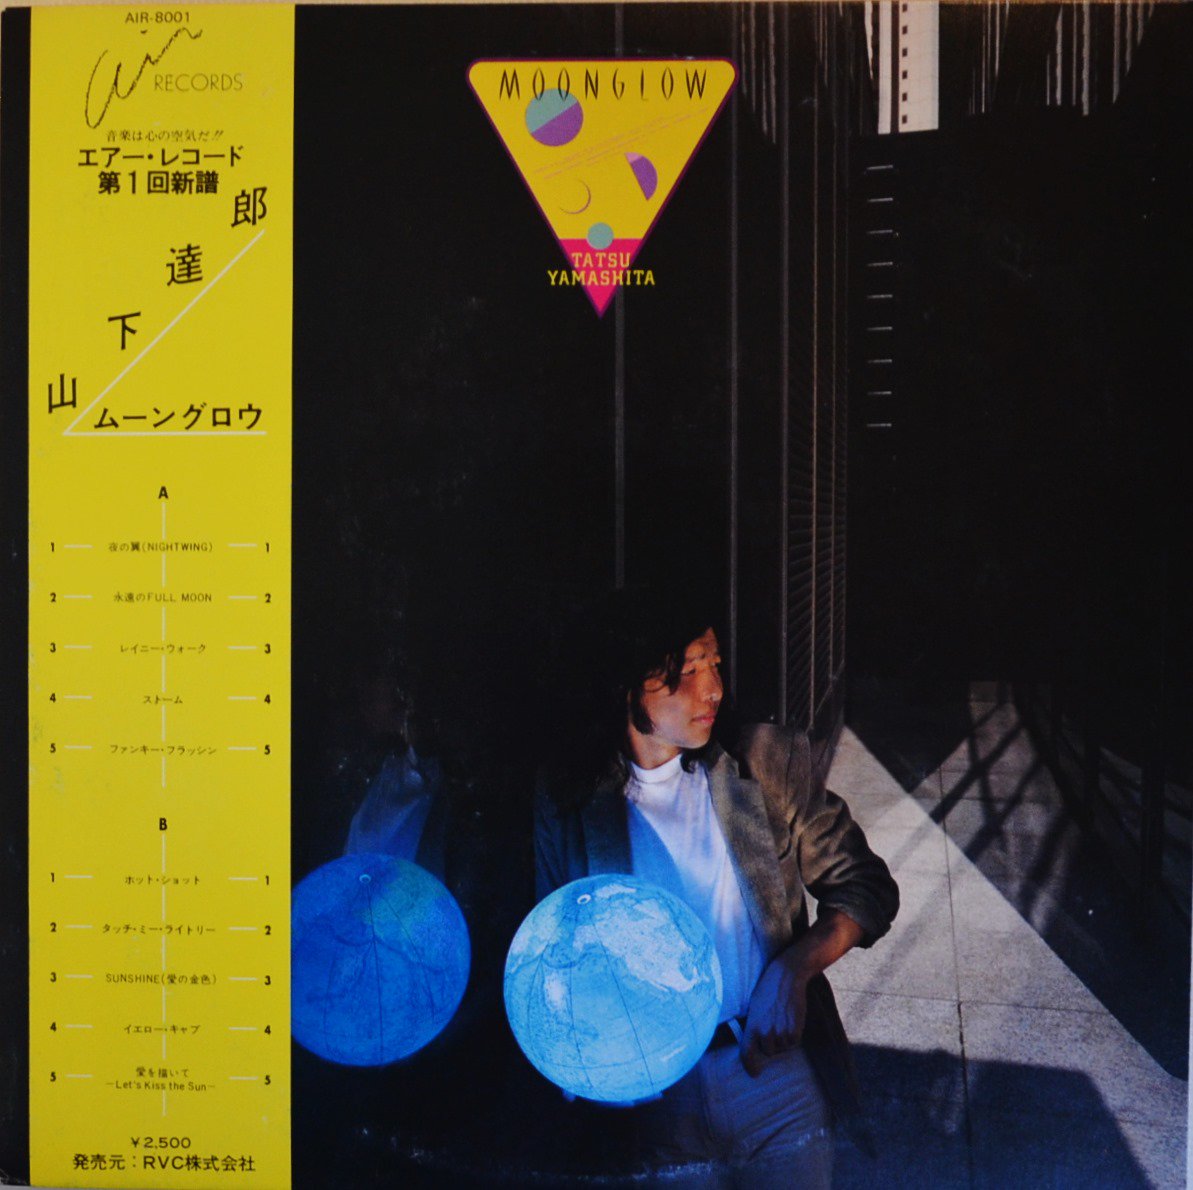 山下達郎 TATSURO YAMASHITA / MOONGLOW (LP) - HIP TANK RECORDS